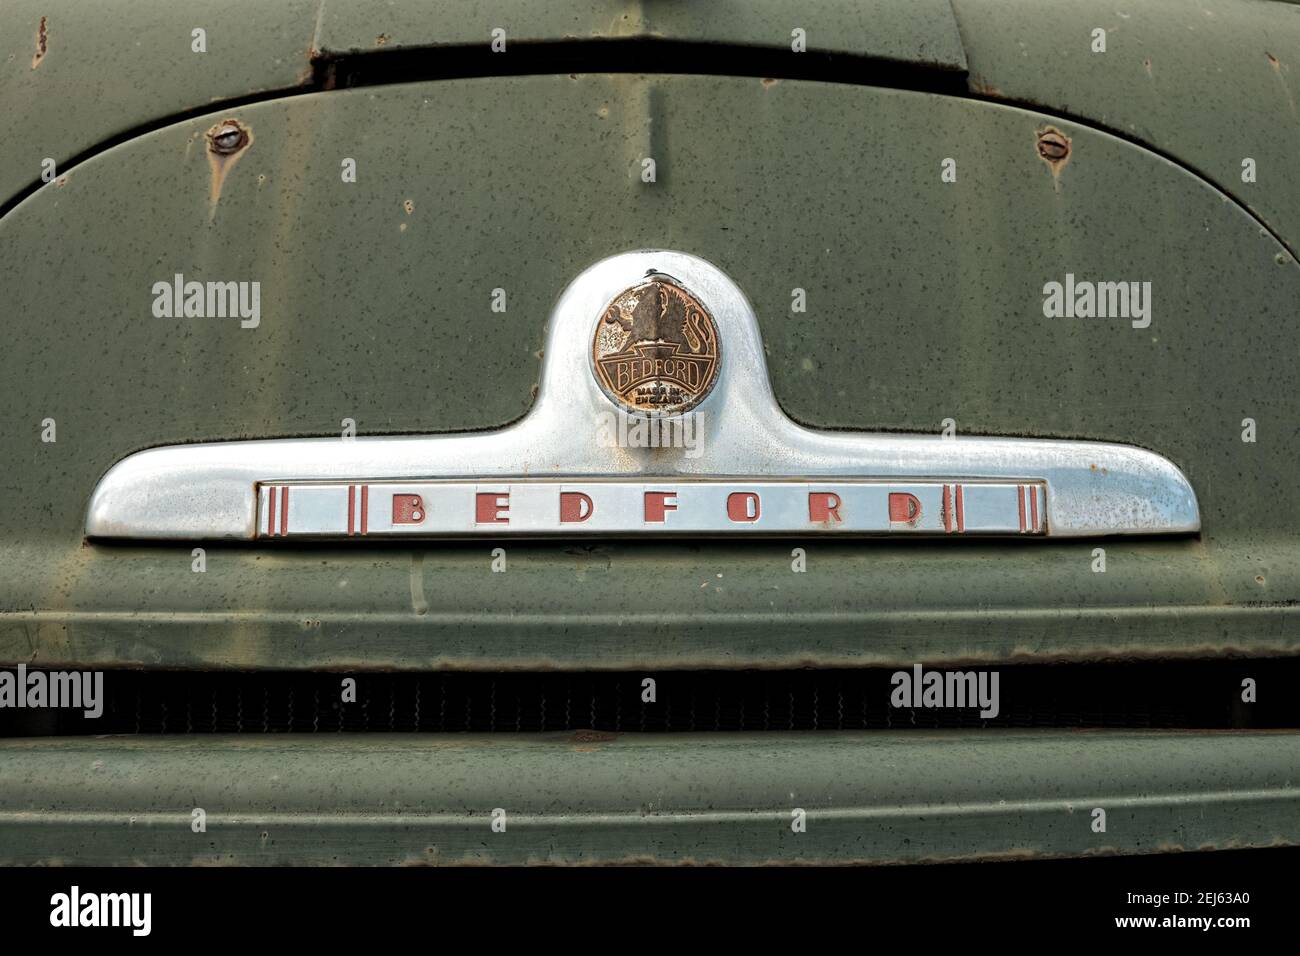 PLJEVLJA, MONTENEGRO - 02. AUGUST 2016: Logo 'BEDFORD' auf altem grünen Feuerwehrauto. Gegründet 1930 und Bau von Nutzfahrzeugen, Bedford Vehi Stockfoto